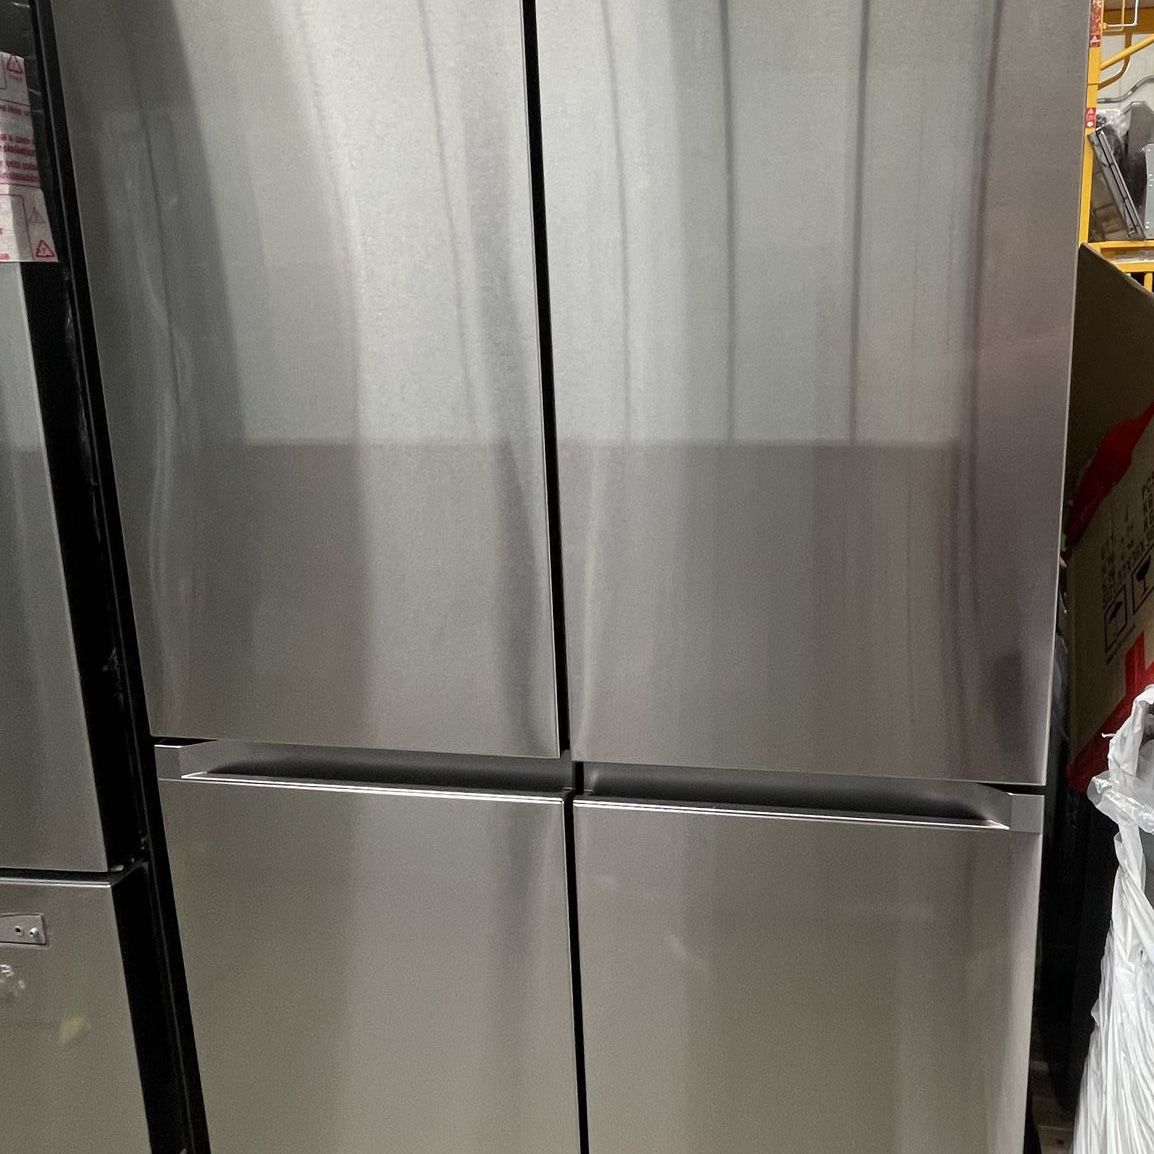 Samsung 23 cu. ft. Counter Depth 4-Door French Door Refrigerator with Beverage Center in Stainless Steel